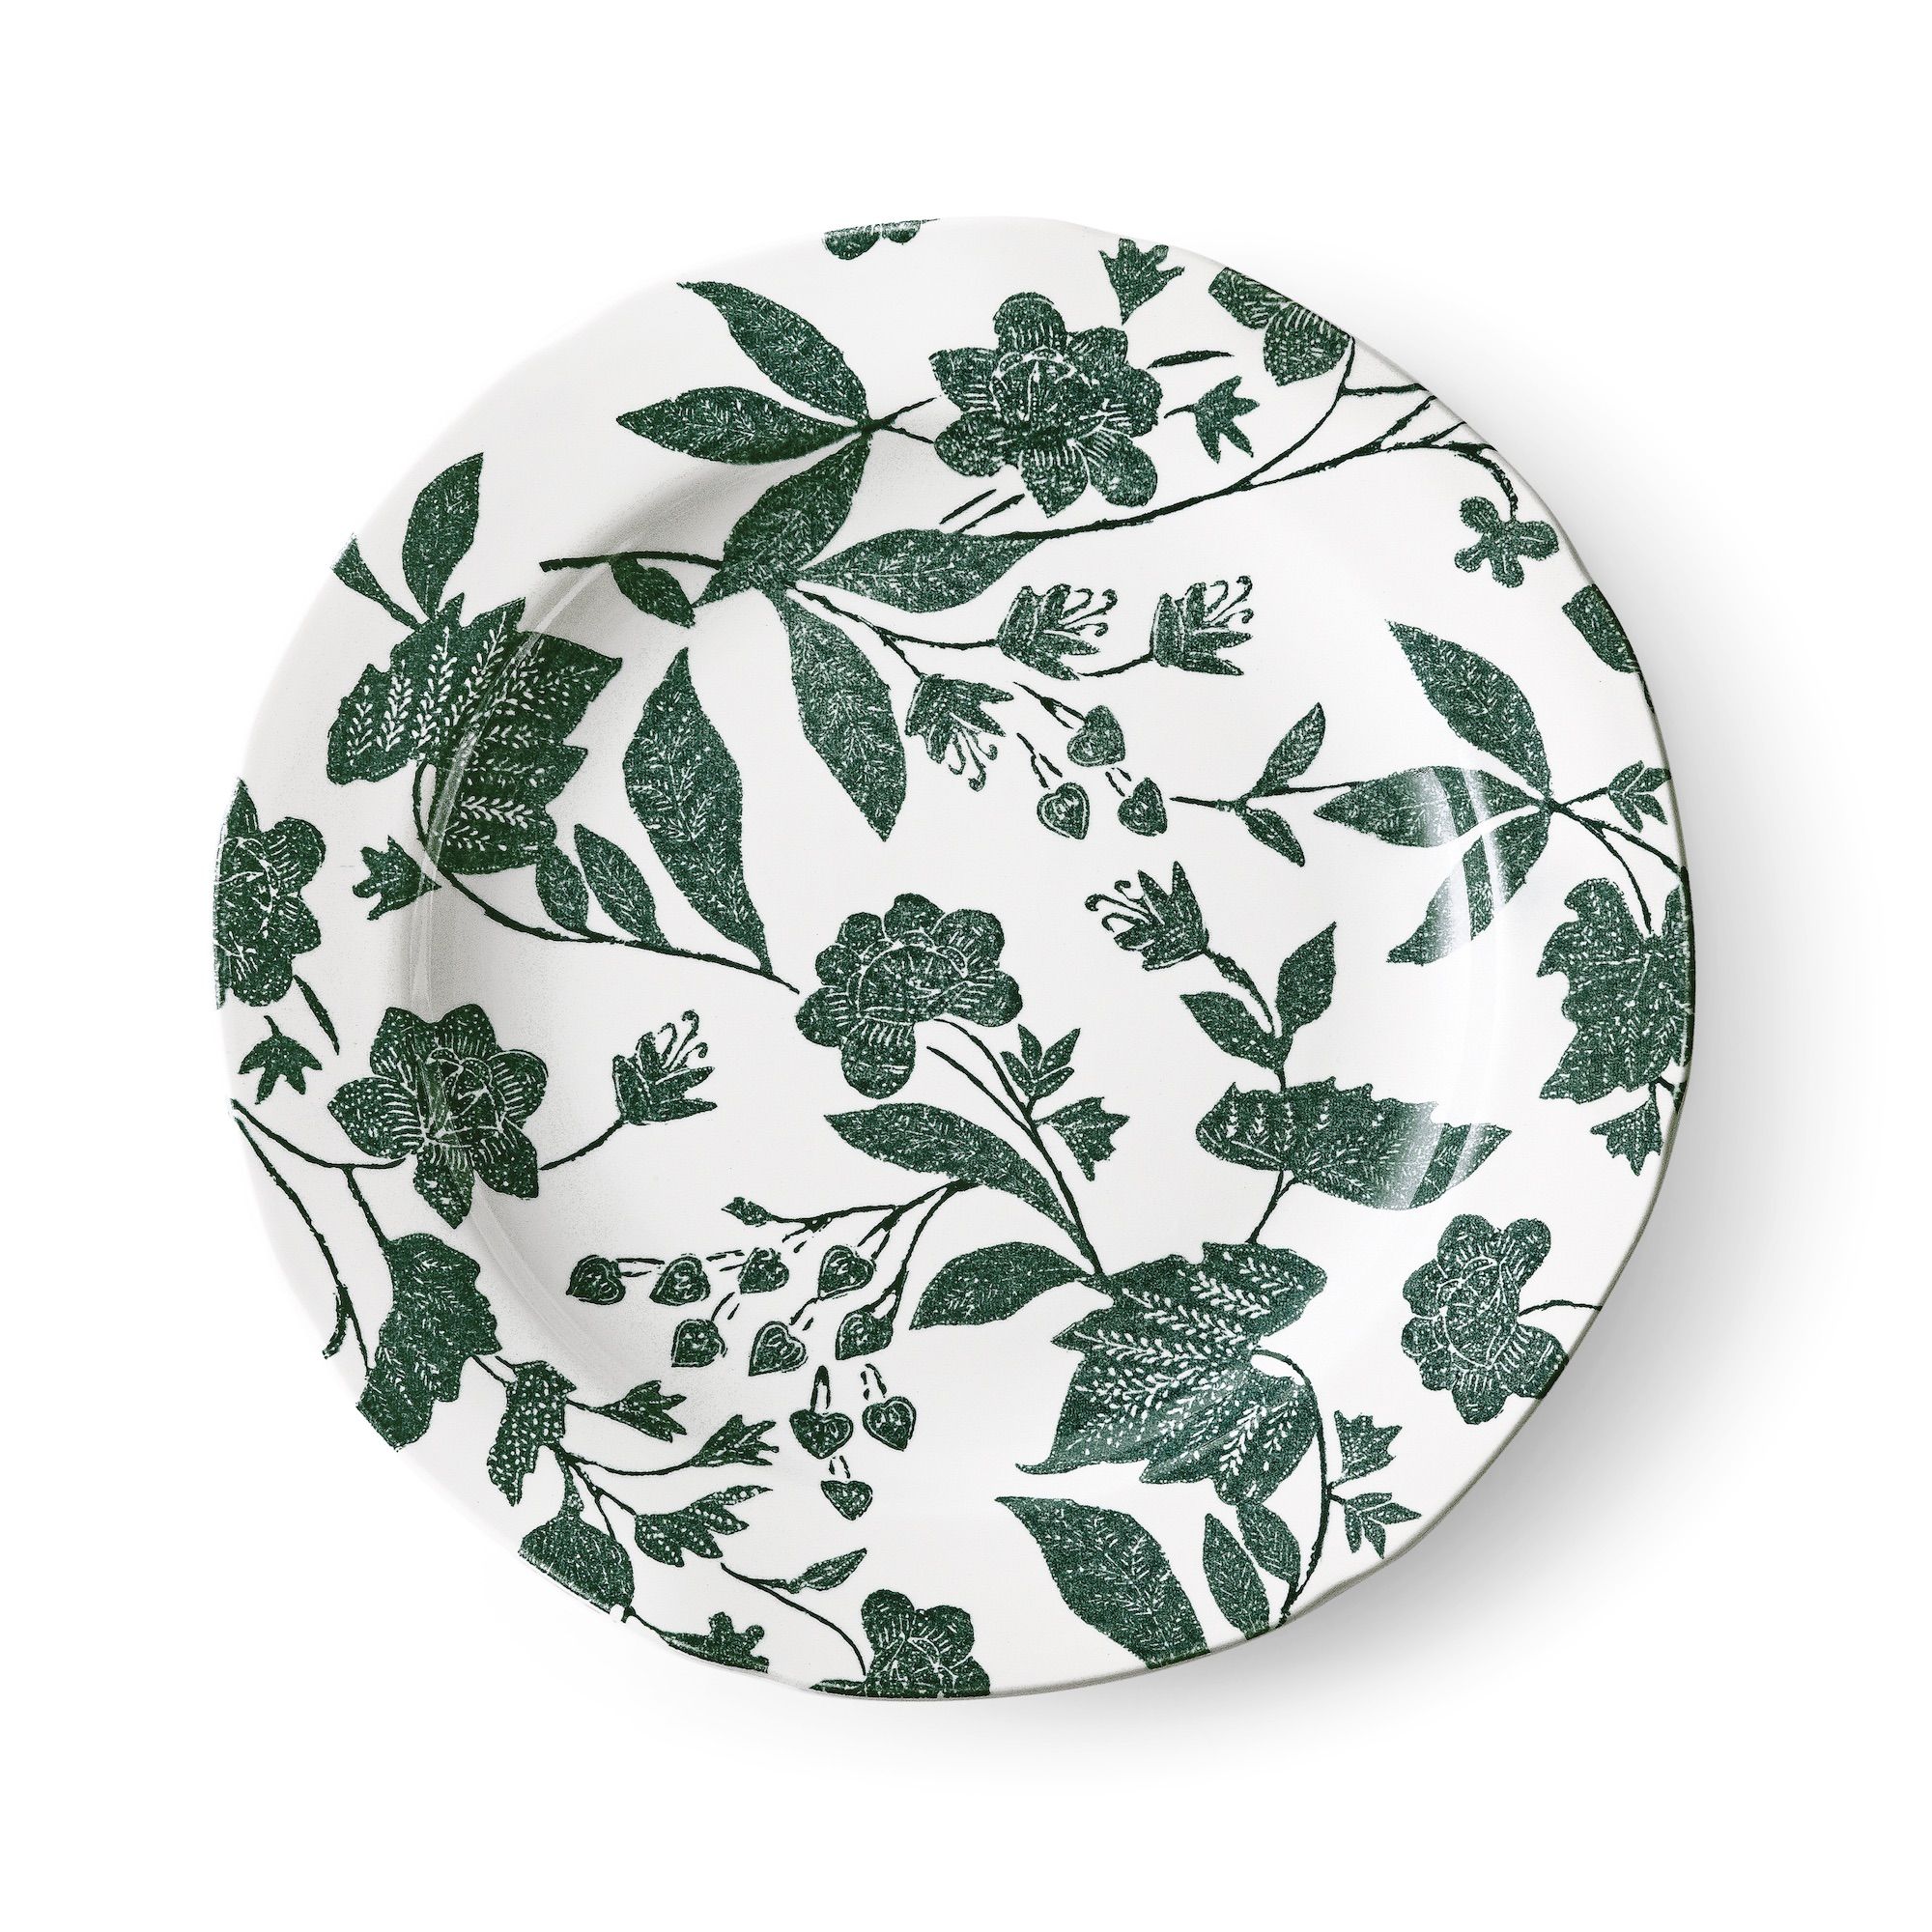 Burleigh x Ralph Lauren - New Green - Table Styling - Humphrey Munson Blog 